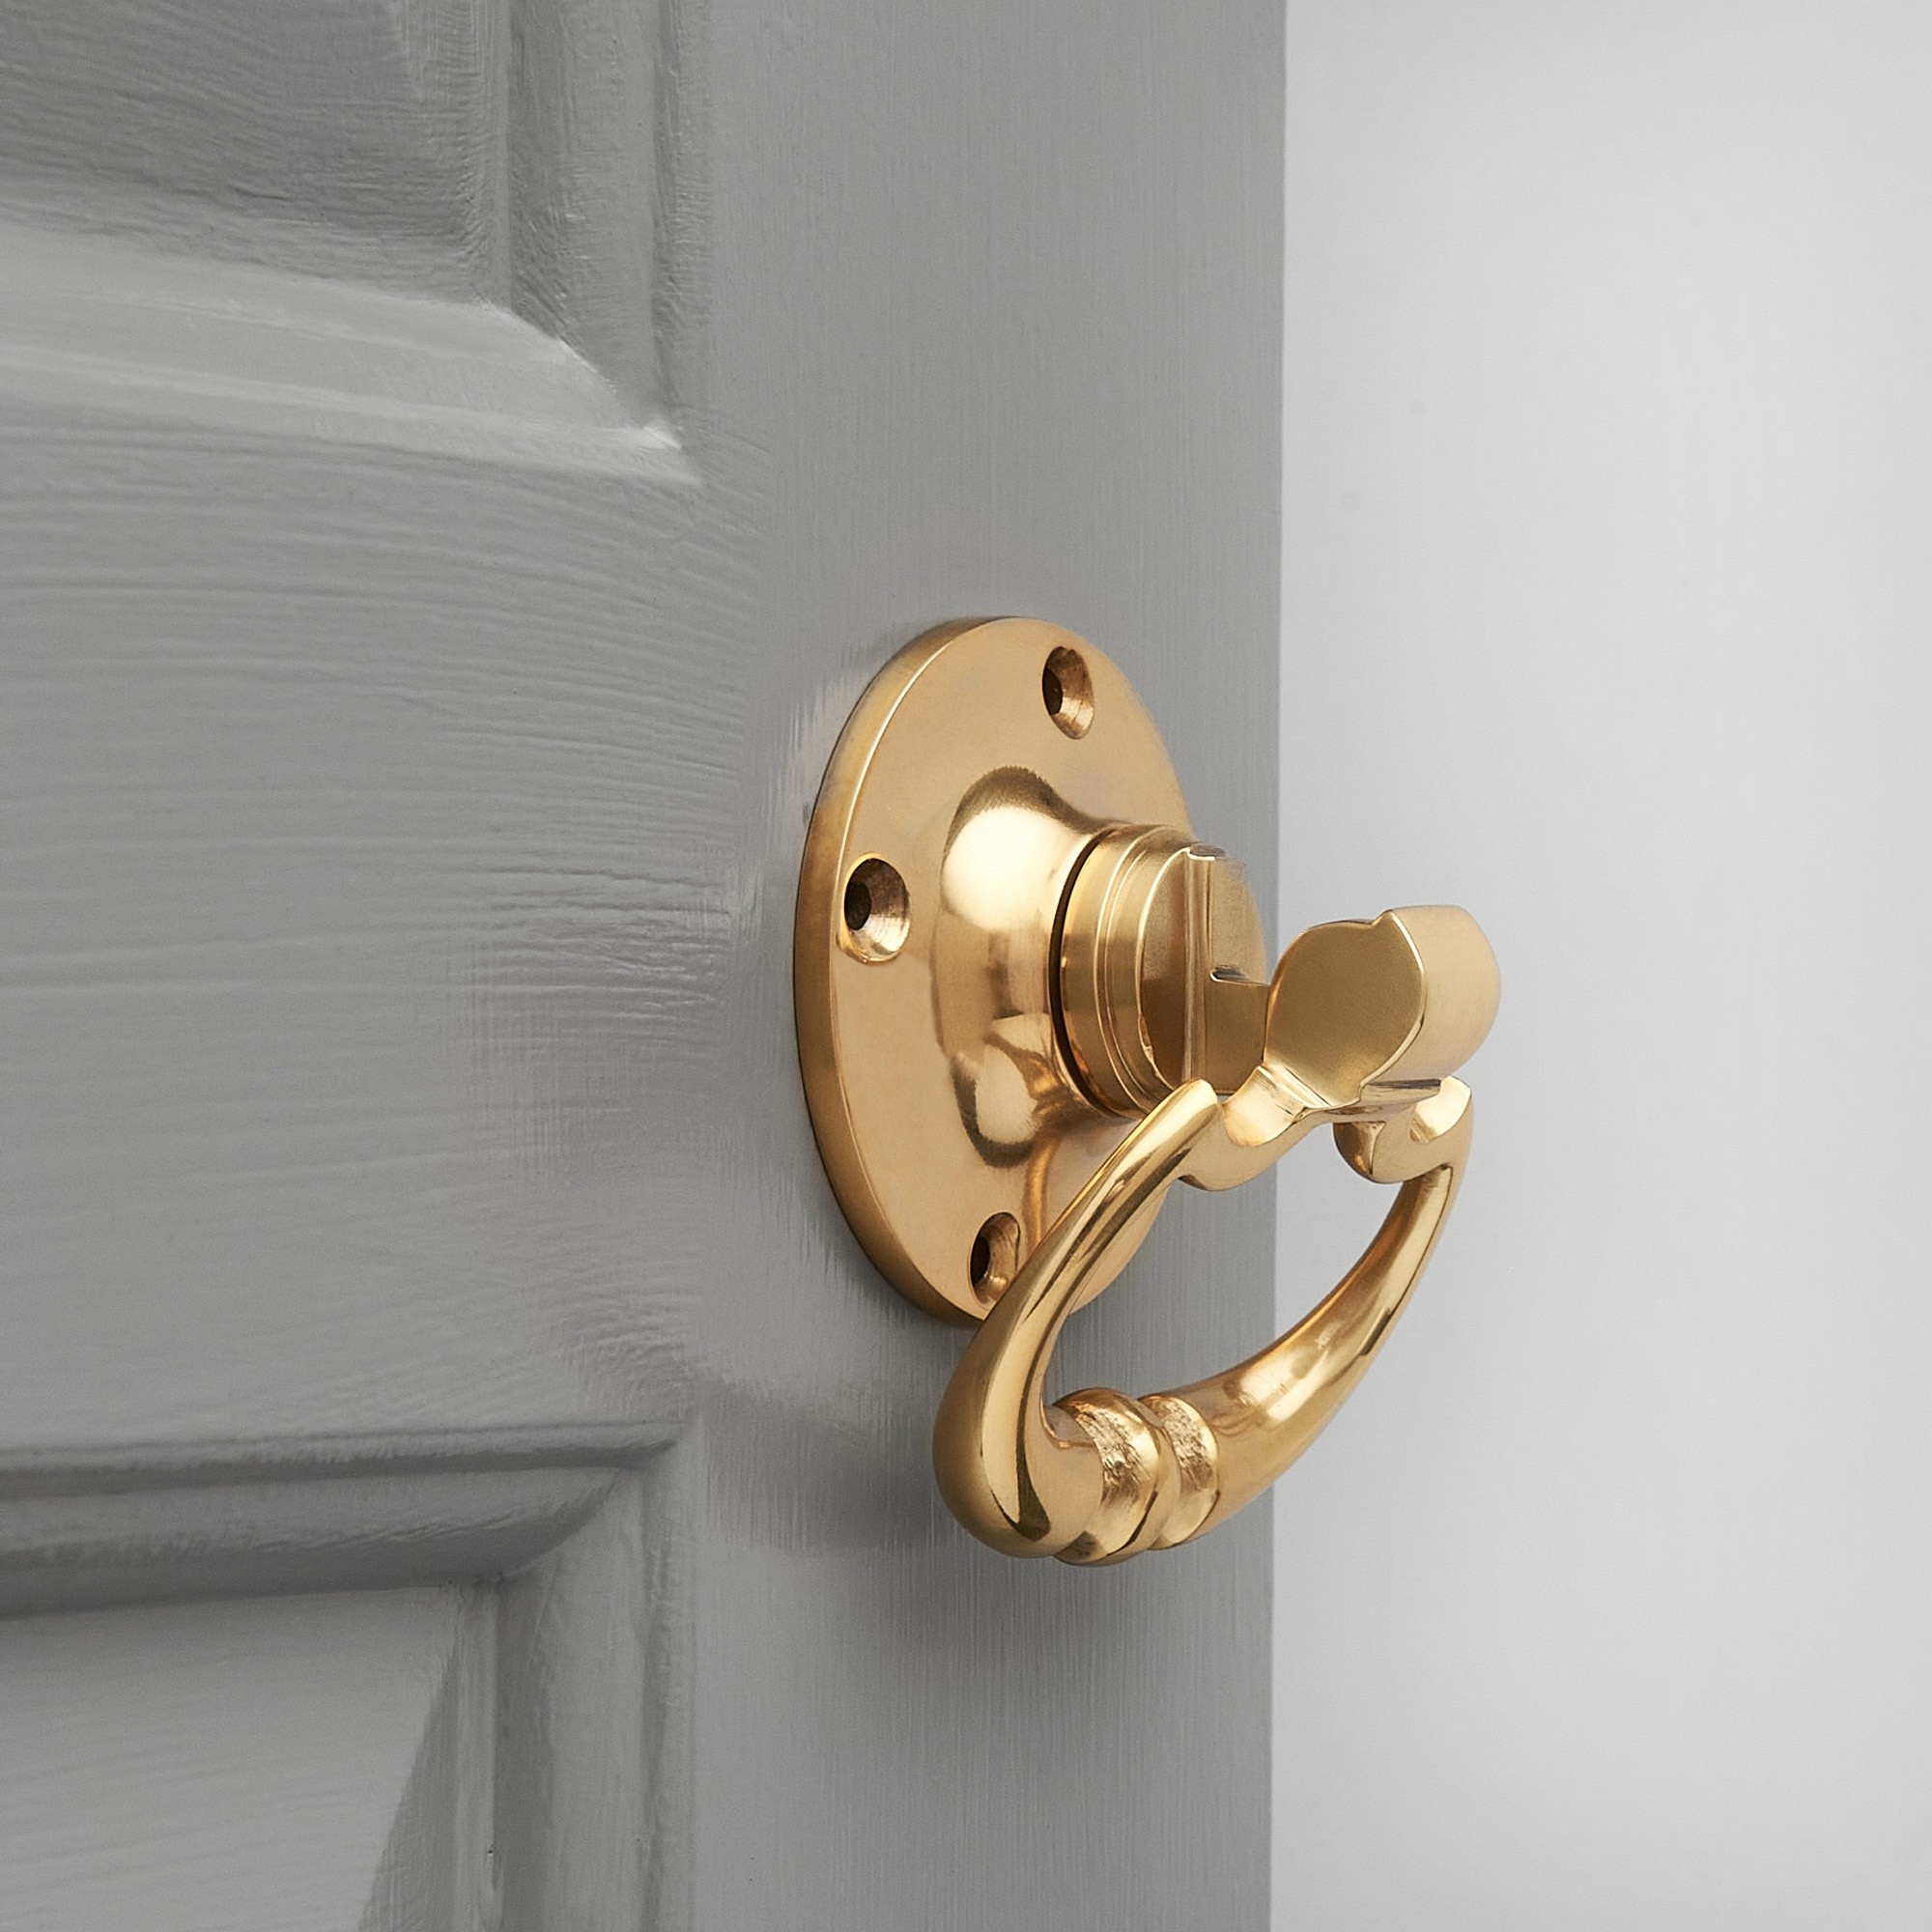 dutch-drop-ring-door-handles-pair-brass